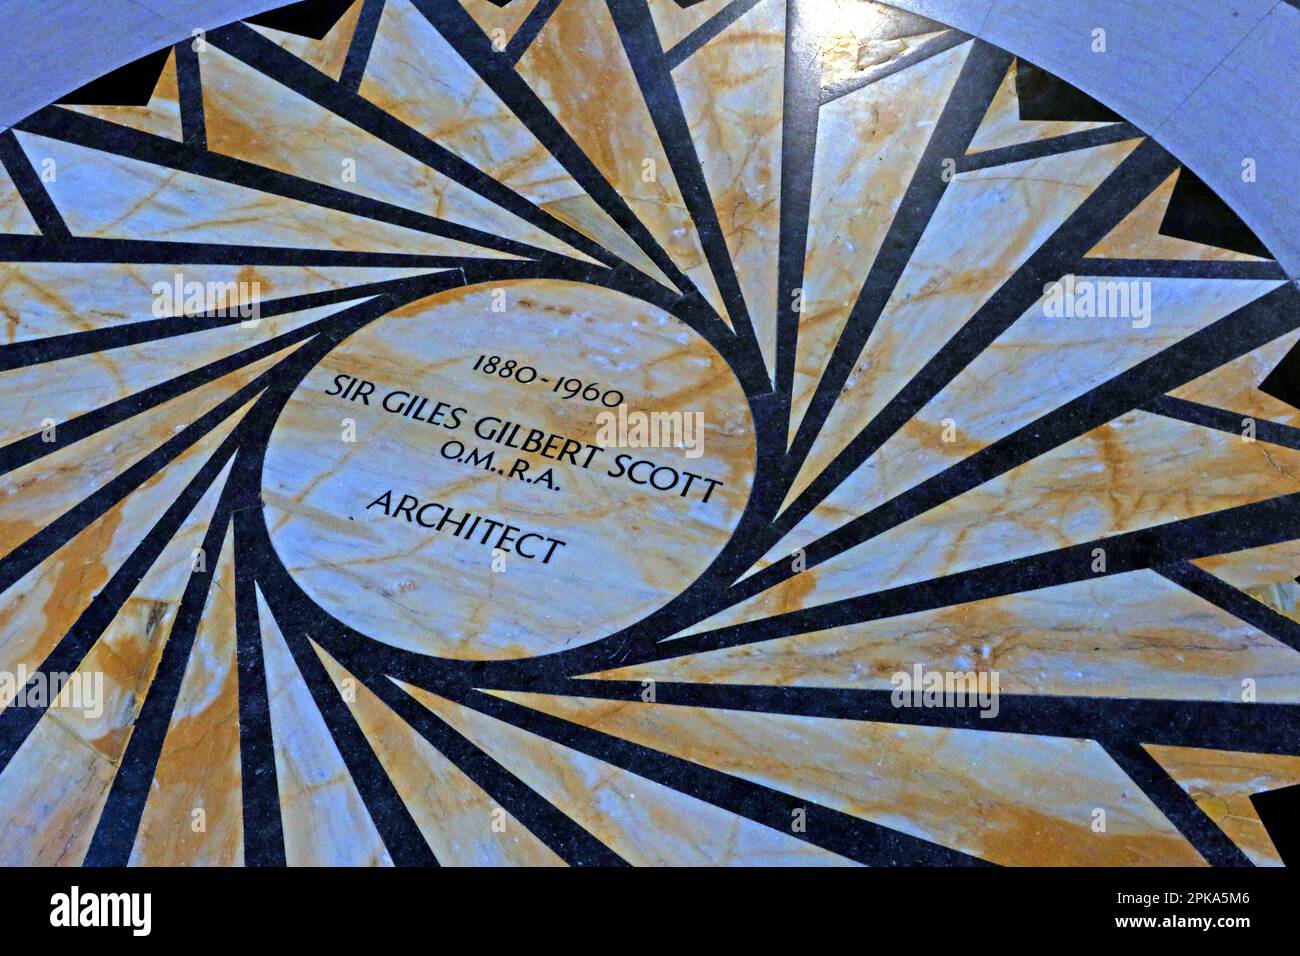 Sir Giles Gilbert Scott OM RA FRIBA, 1880-1960, britischer Architekt, kreisförmiges Mosaik auf dem Boden der Liverpool Anglican Cathedral, Merseyside, Großbritannien, L1 7AZ Stockfoto